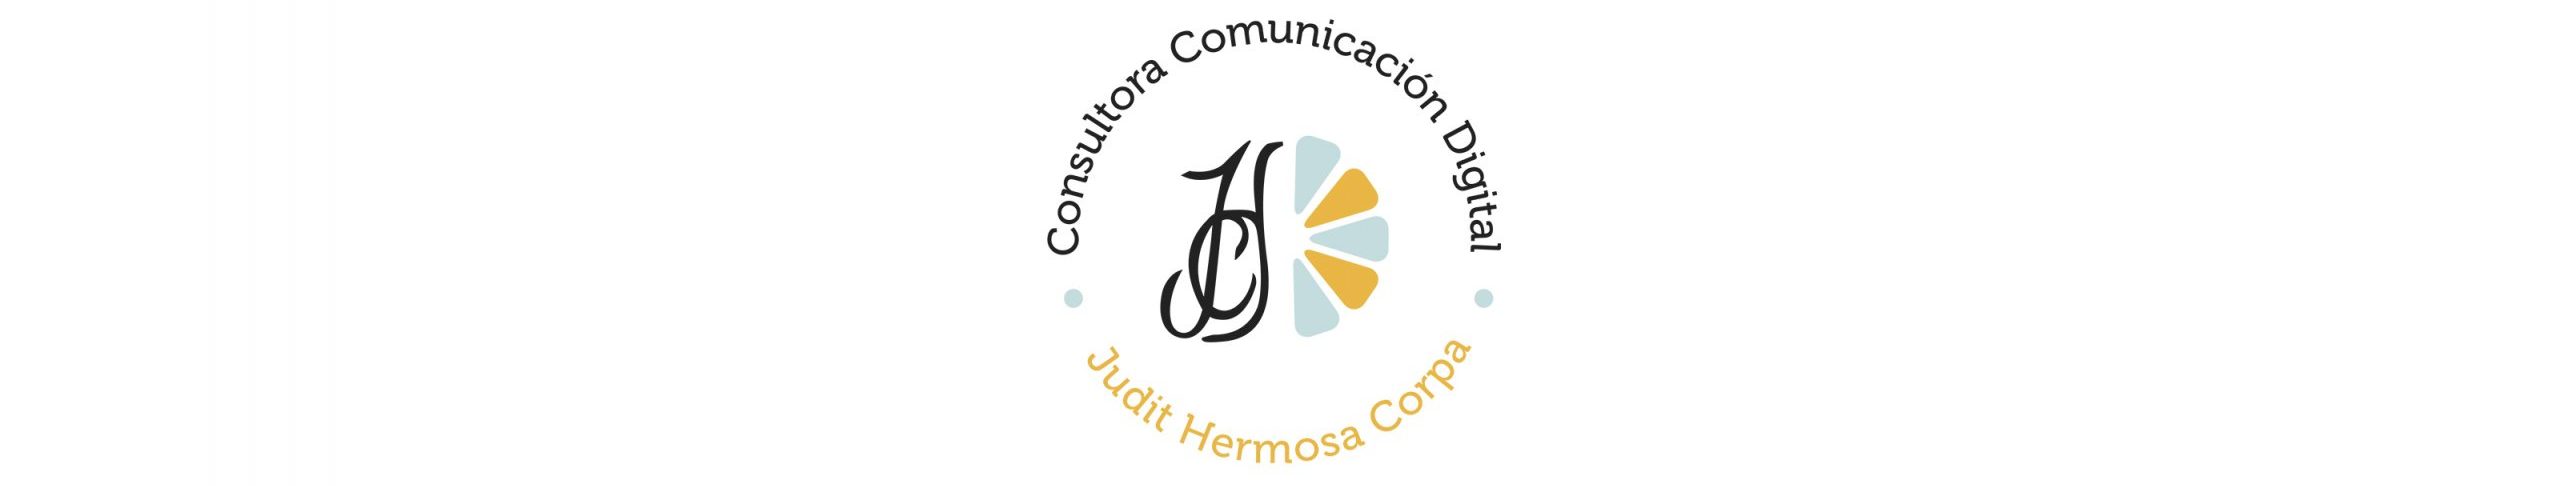 Judit Hermosa Corpa Consultora Comunicación Digital